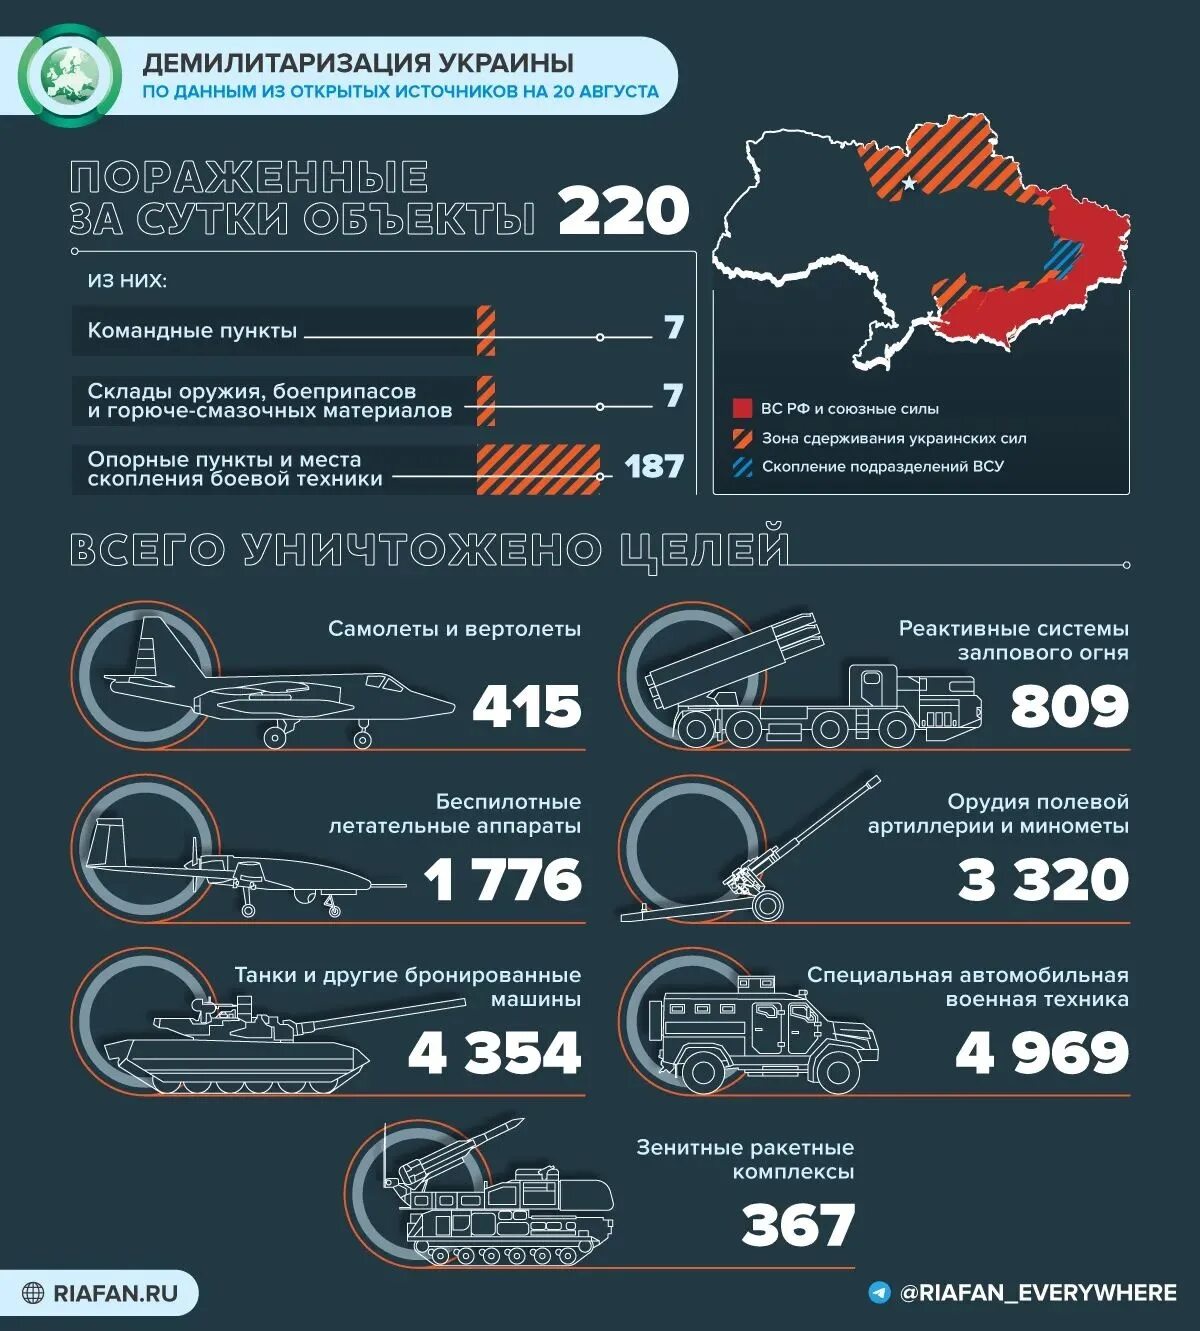 Поставки оружия на Украину инфографика. Потери Украины инфографика. Потери украинских войск 2022 инфографика. Сколько воюет со стороны украины